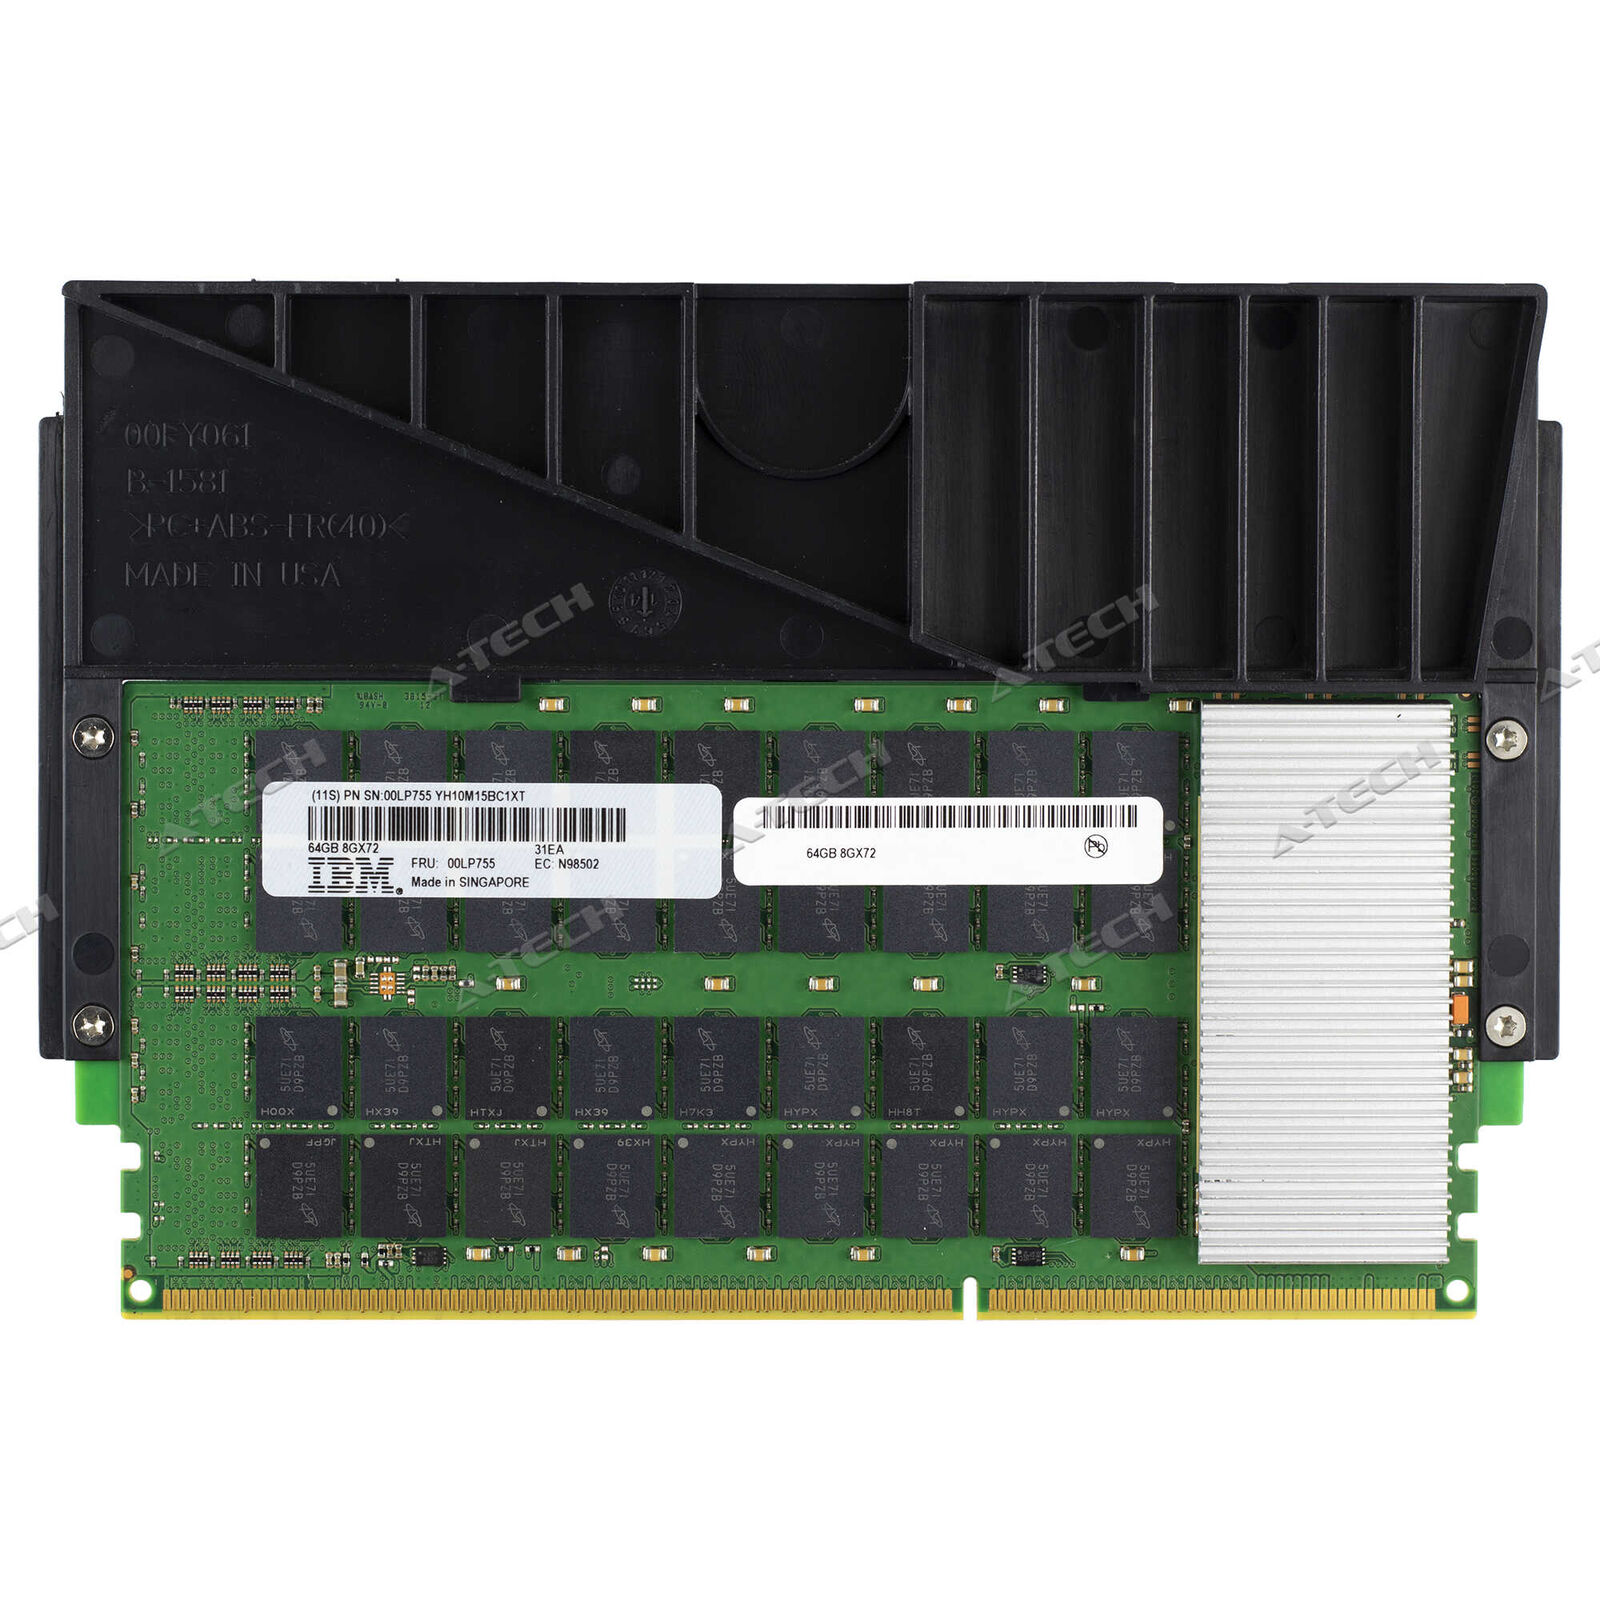 IBM-Lenovo 00LP755 64GB DDR3 CDIMM 8Gx72 Cartridge IBM Power Server Memory RAM